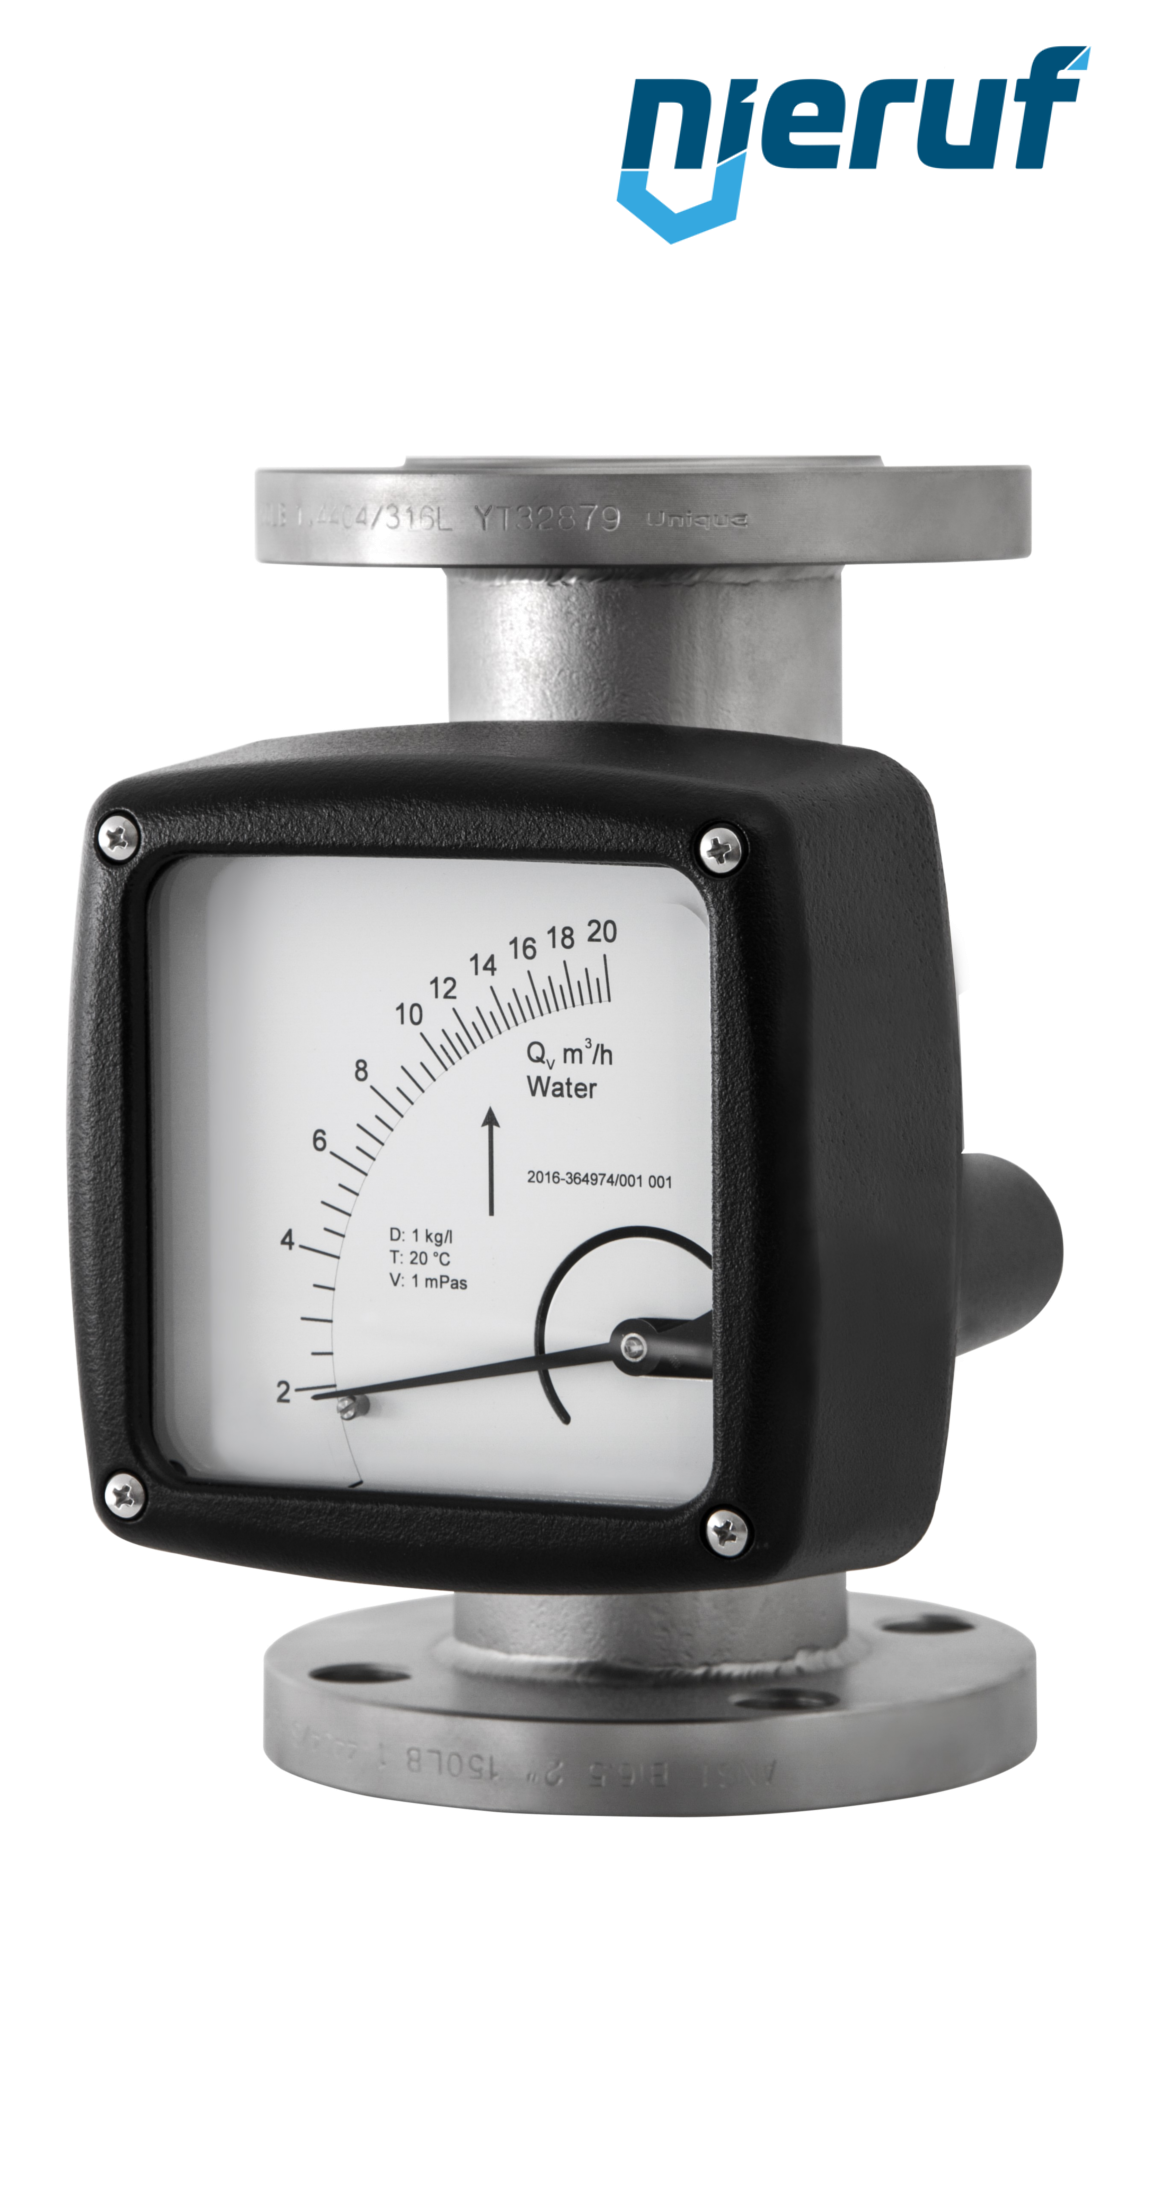 misuratore di portata / flussometro flangiato DN20-attacco 4,6 - 46,0 m3/h tubo DN25 aria